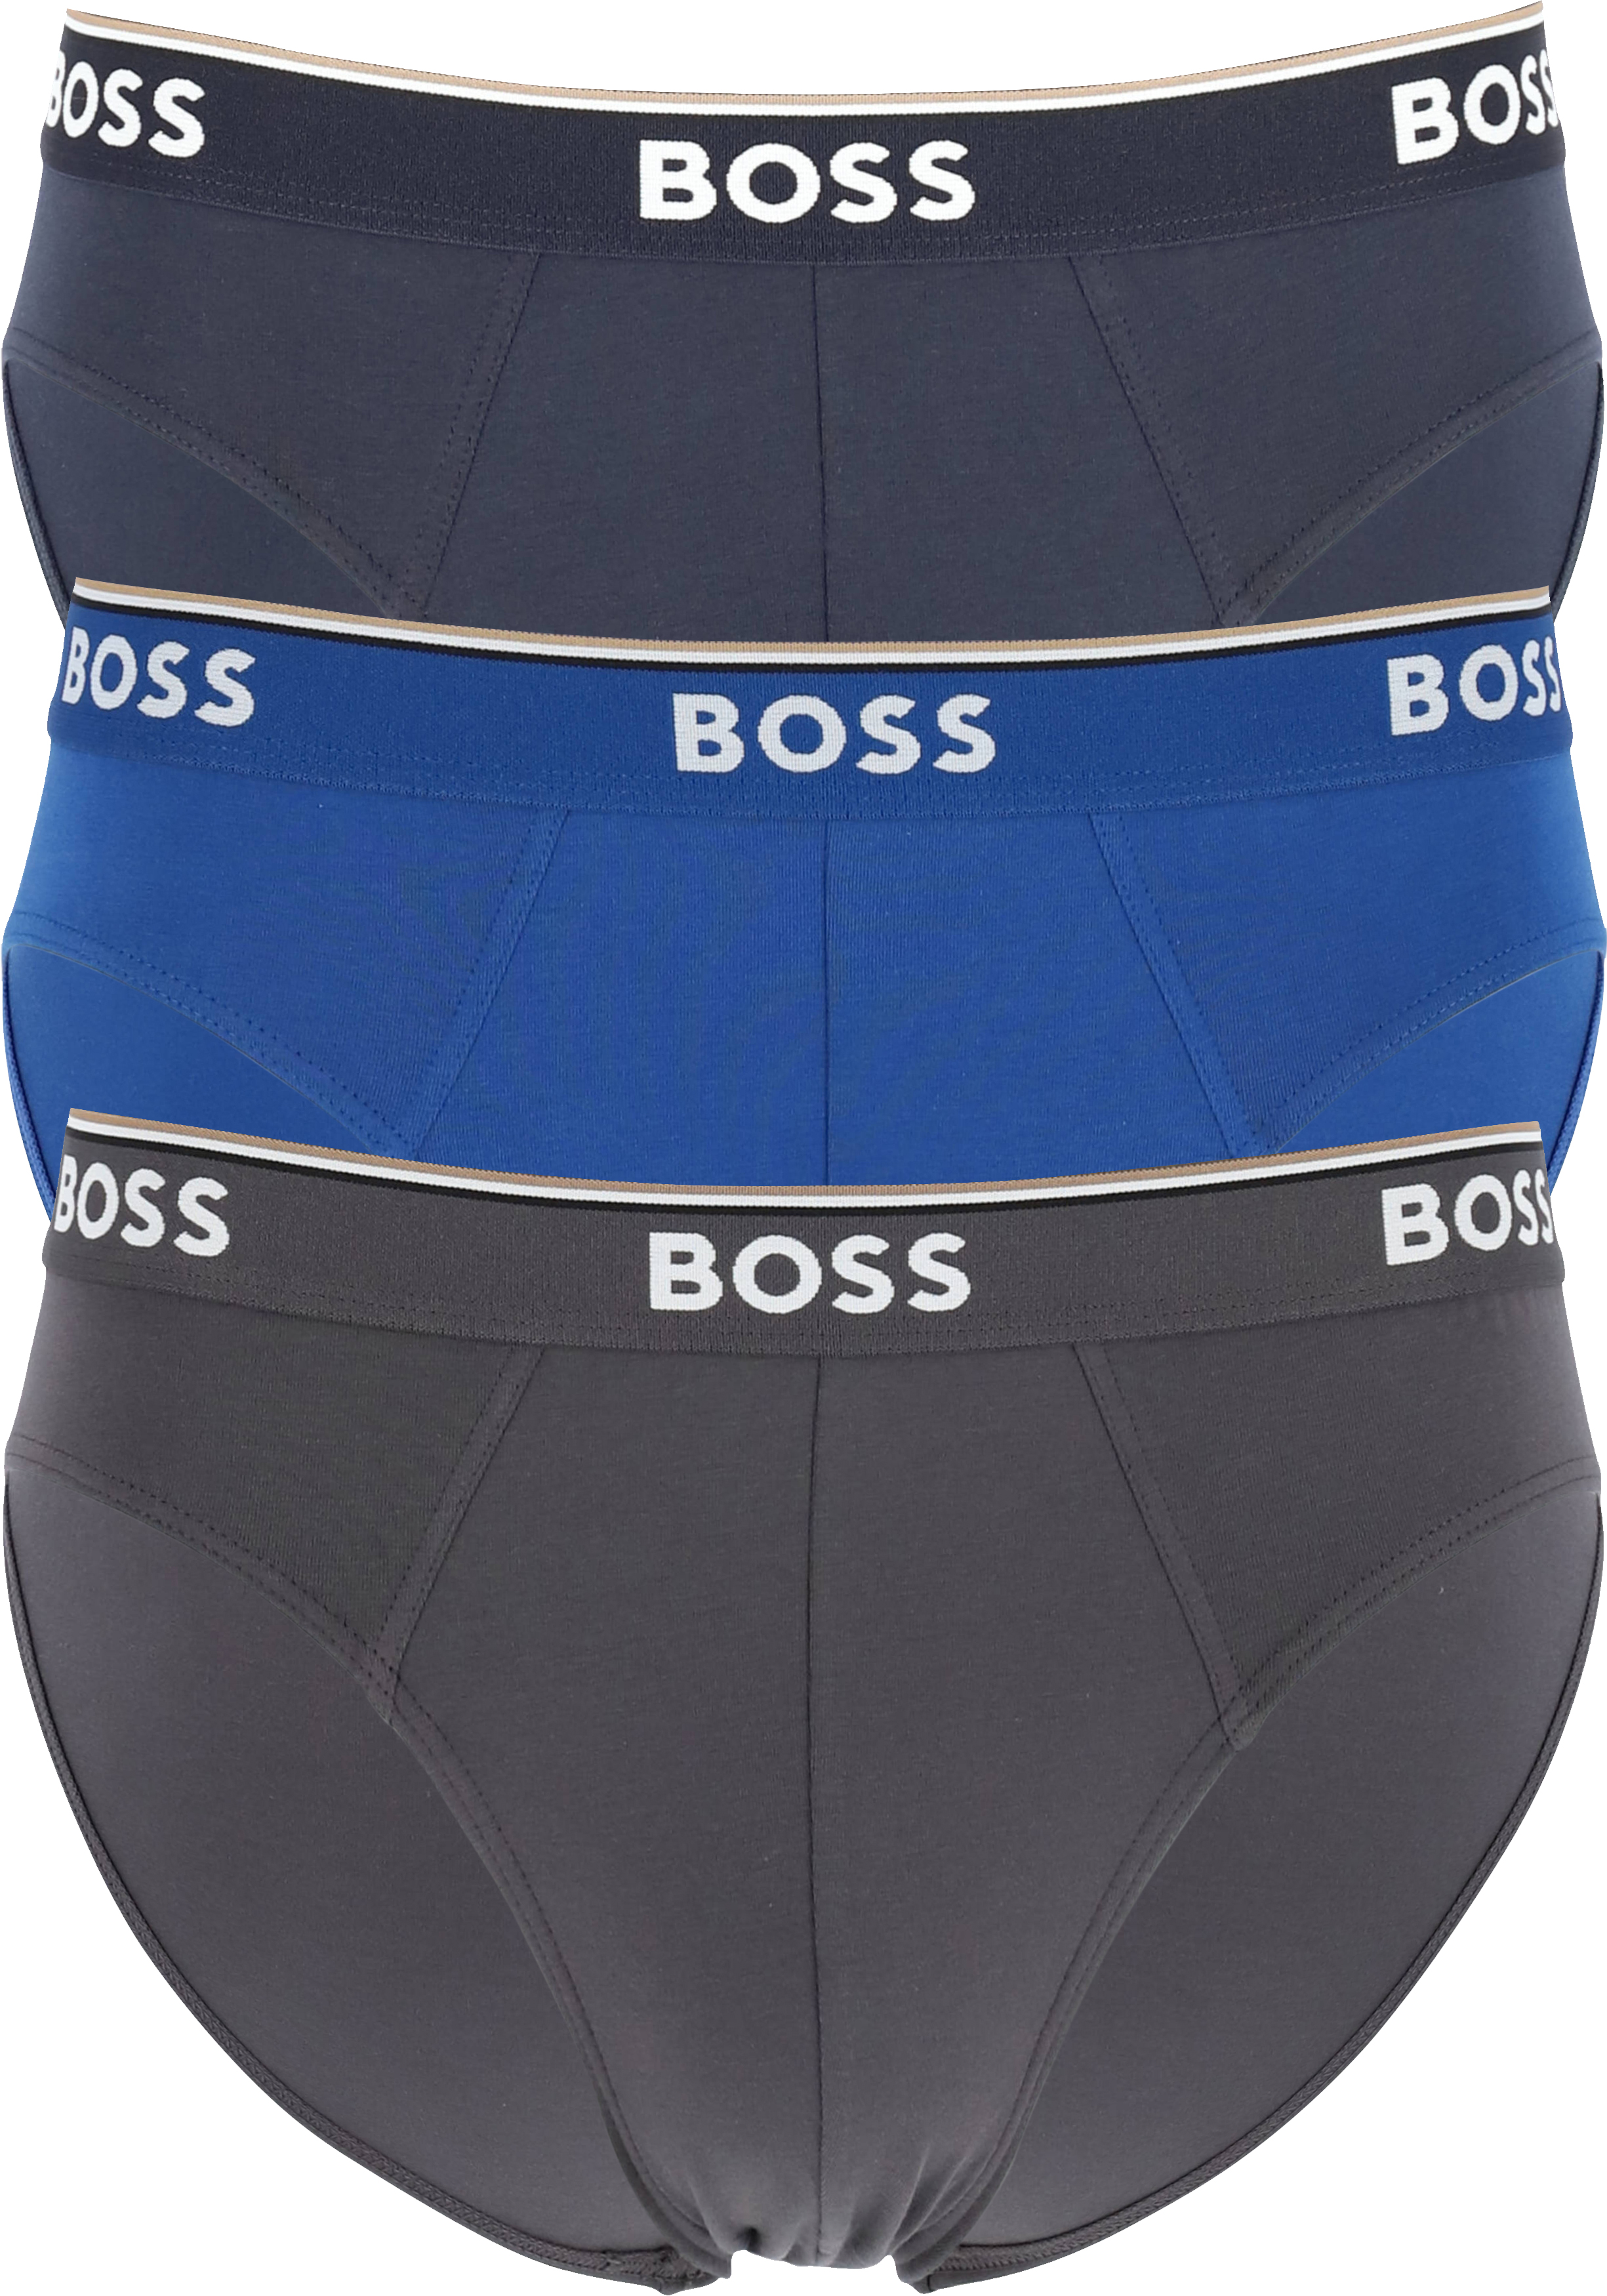 HUGO BOSS Power briefs (3-pack), heren slips, blauw, navy, grijs